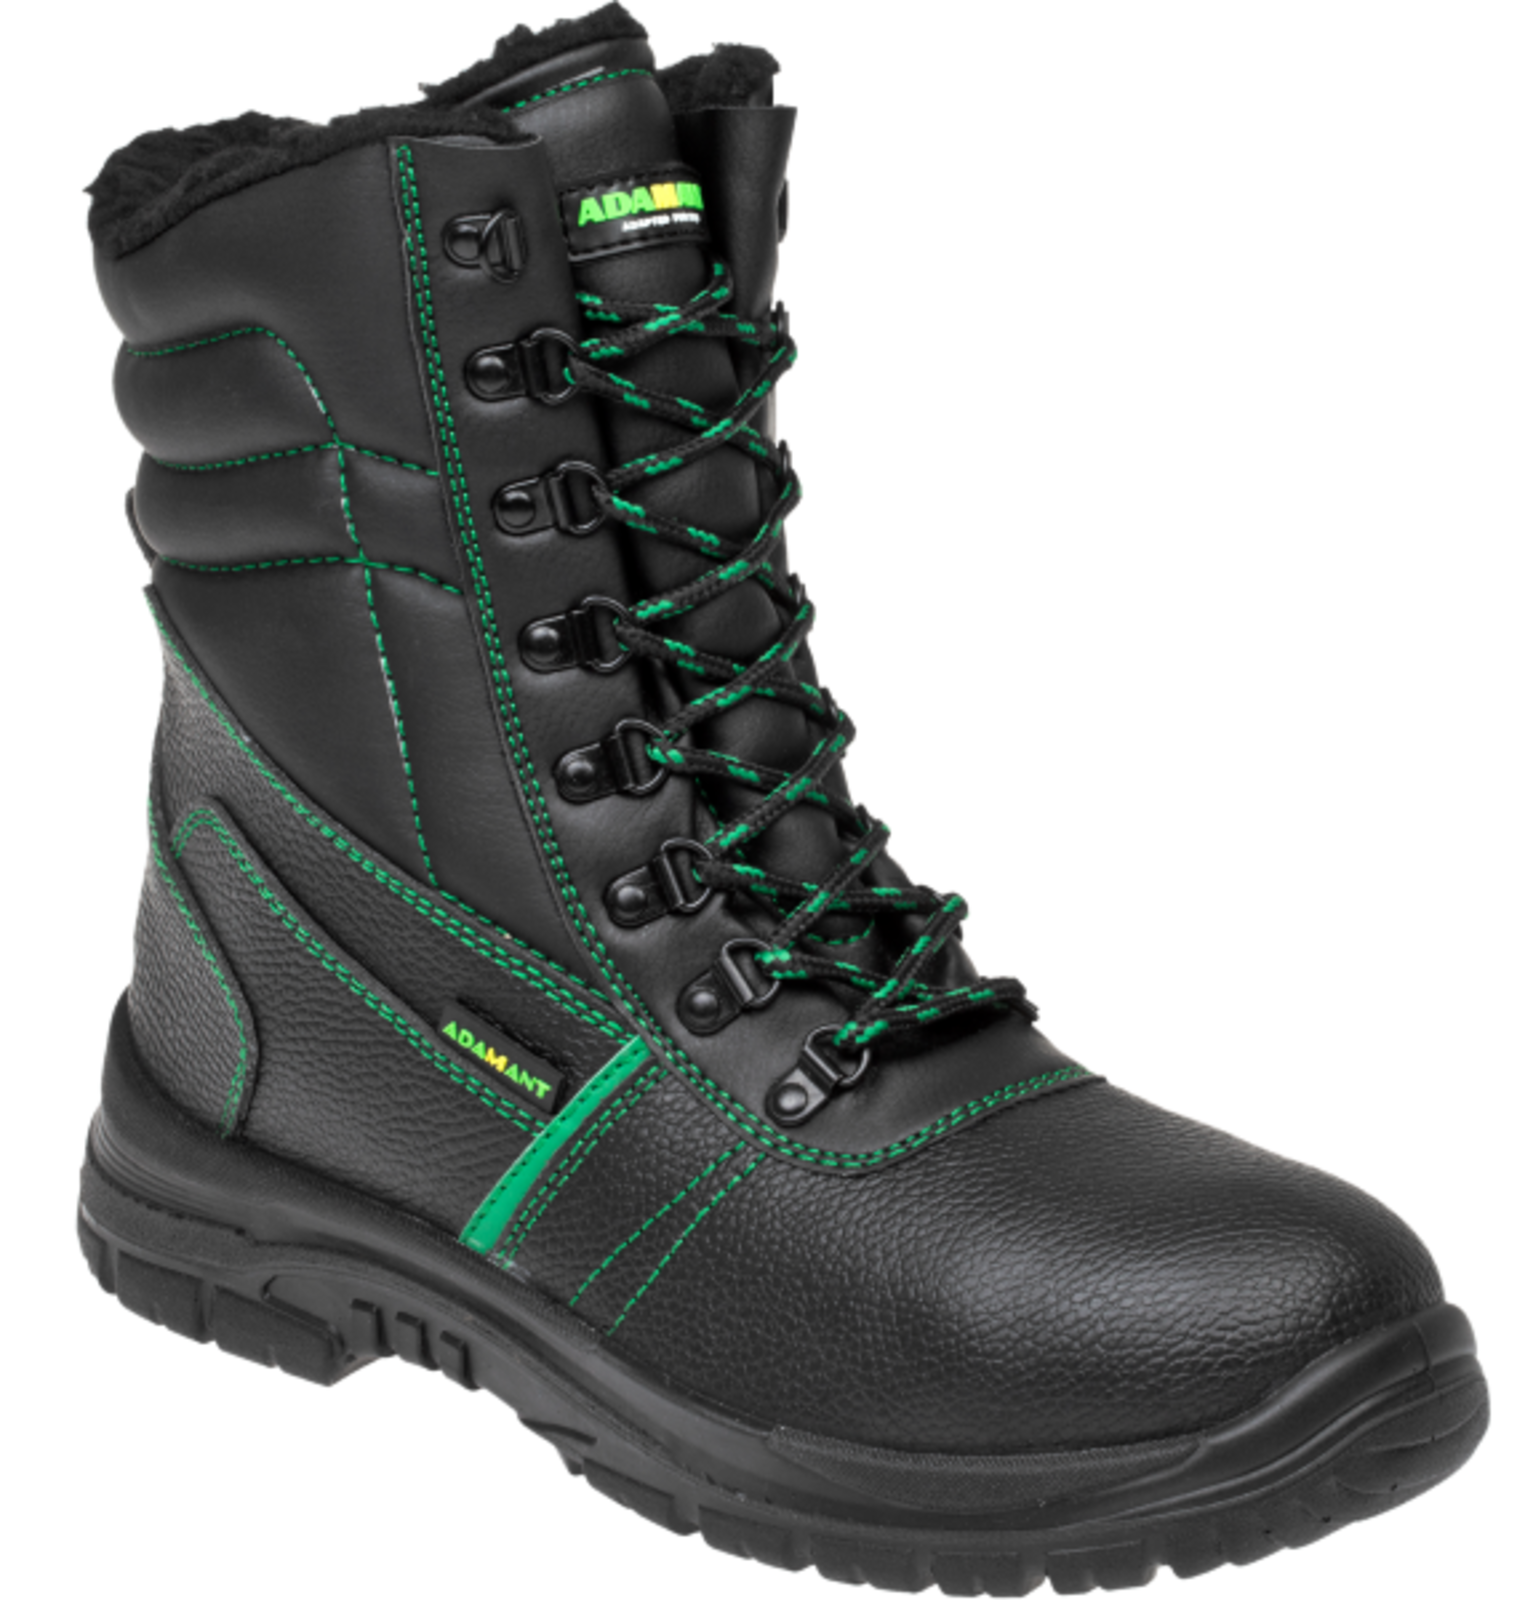 Zimná vysoká bezpečnostná obuv Adamant Classic S3 - veľkosť: 39, farba: čierna